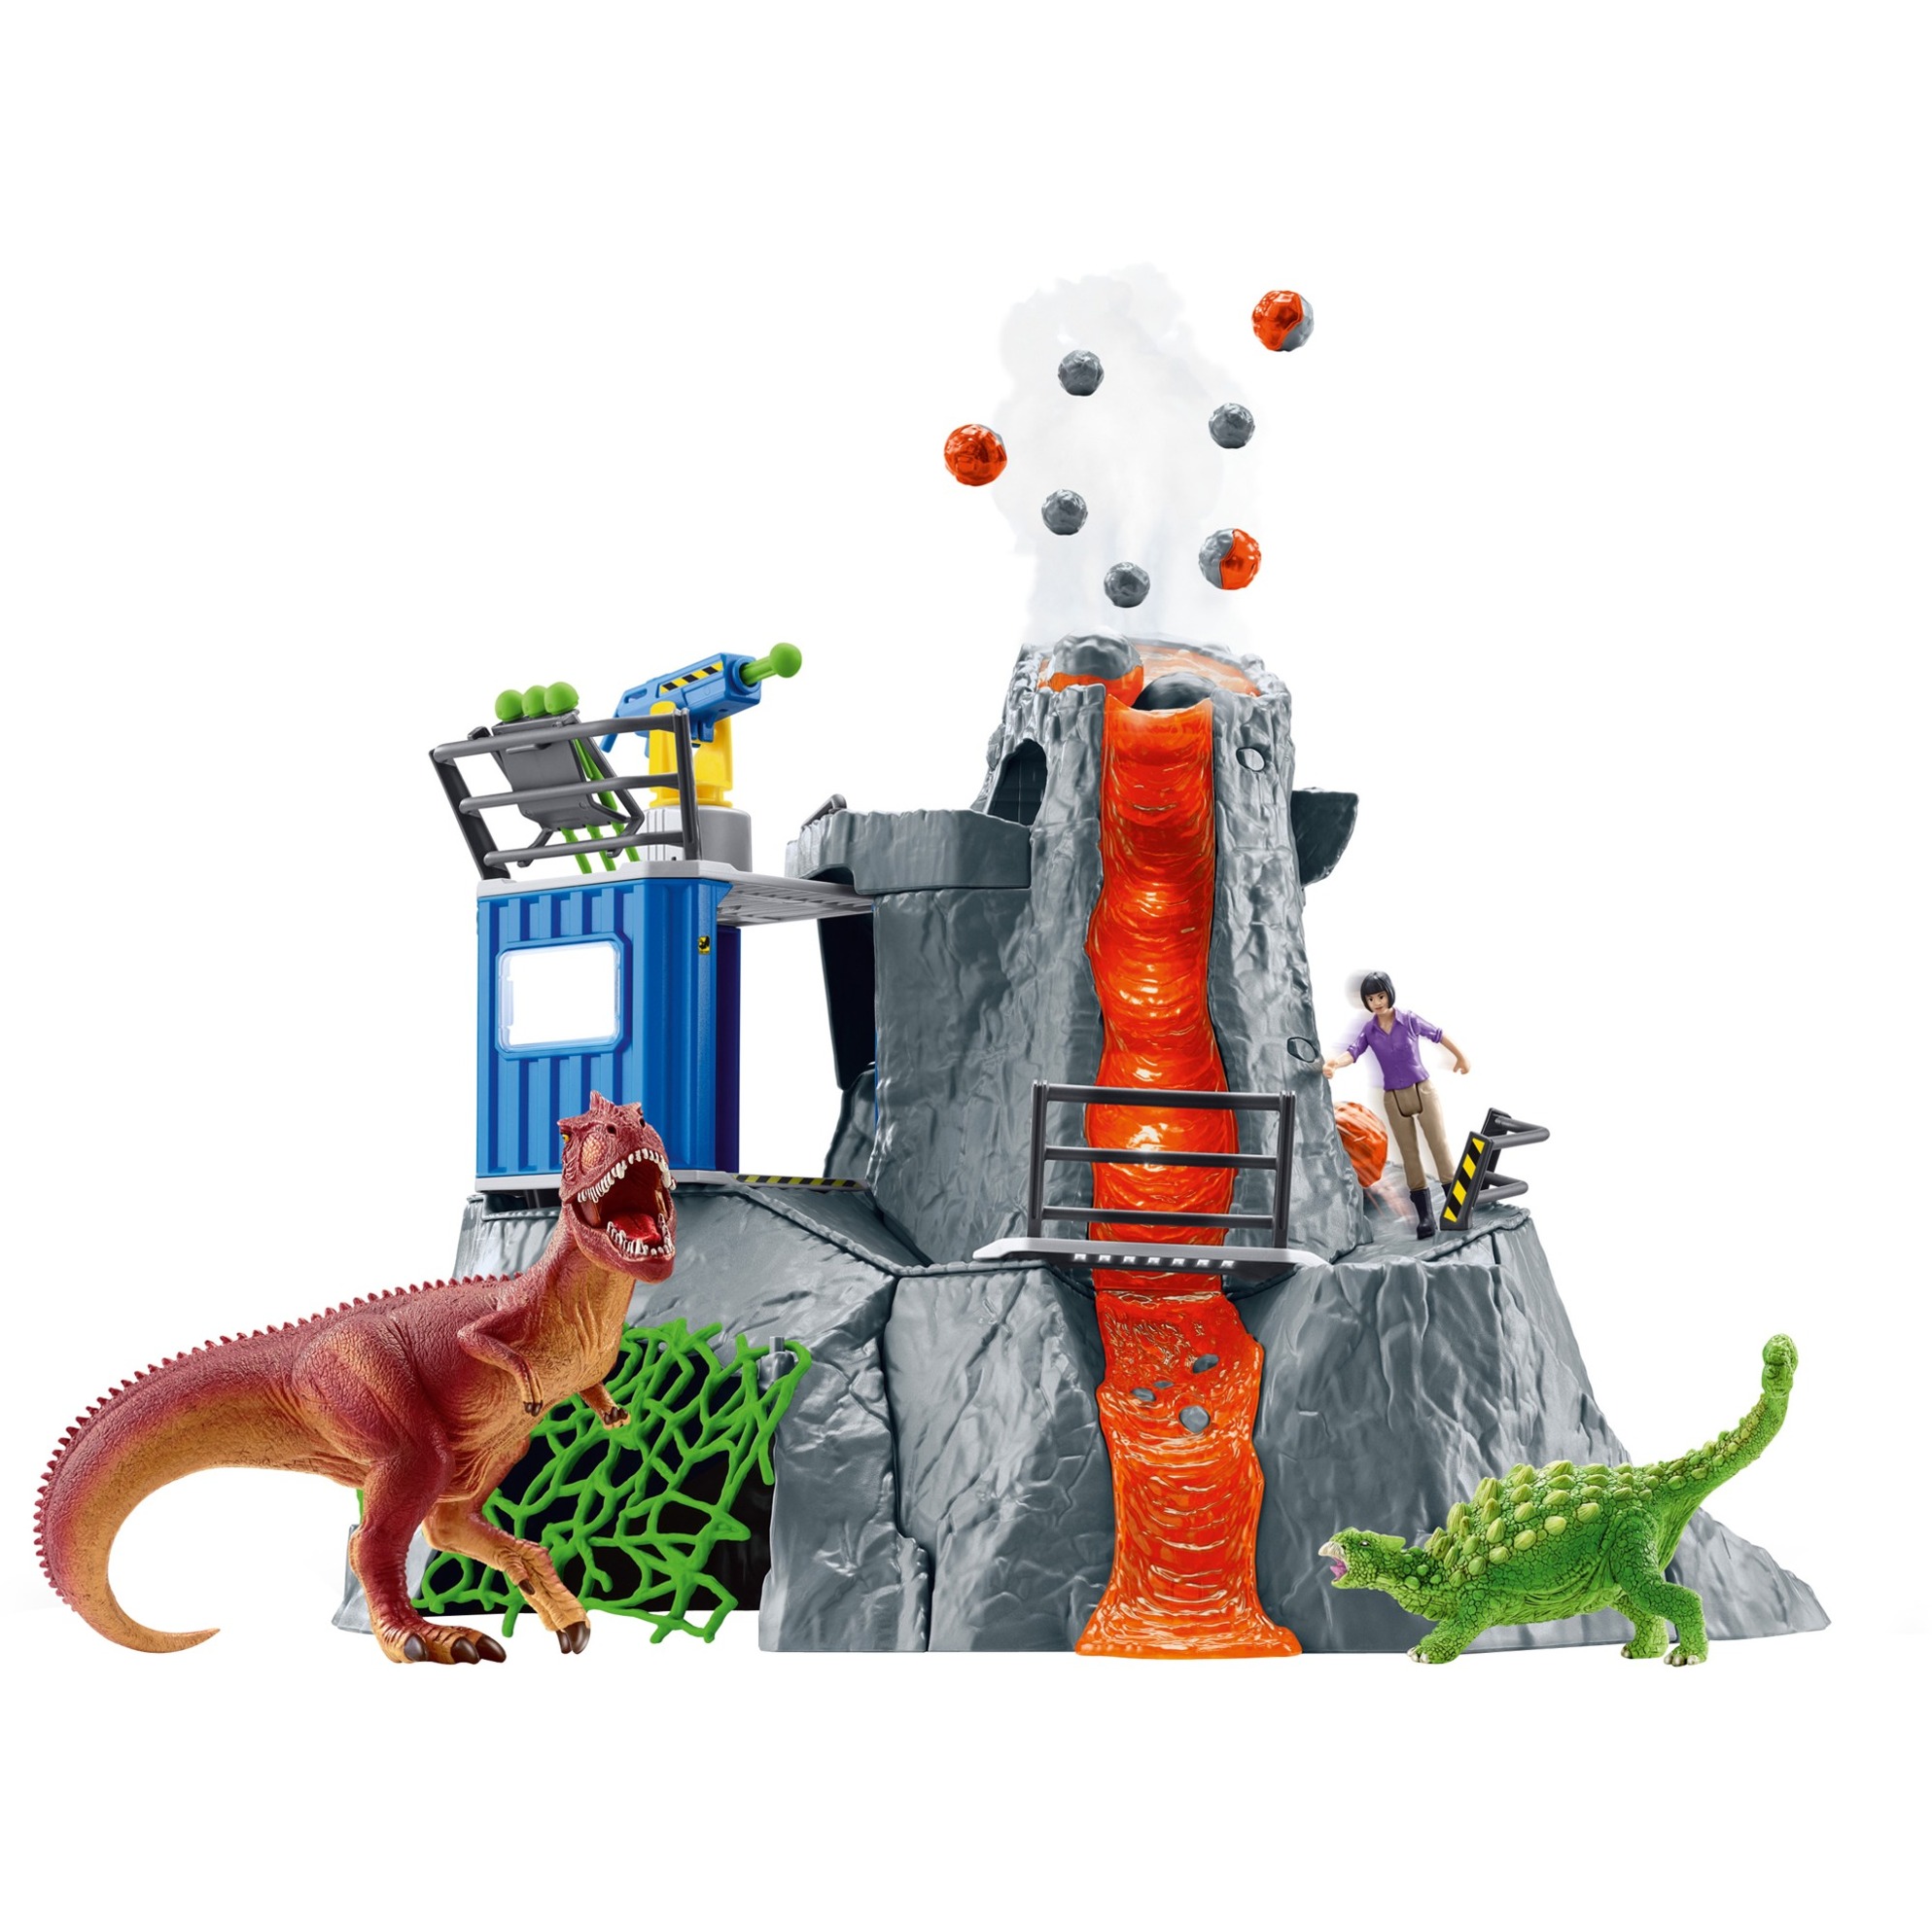 Image of Alternate - Dinosaurs Große Vulkan-Expedition, Spielfigur online einkaufen bei Alternate